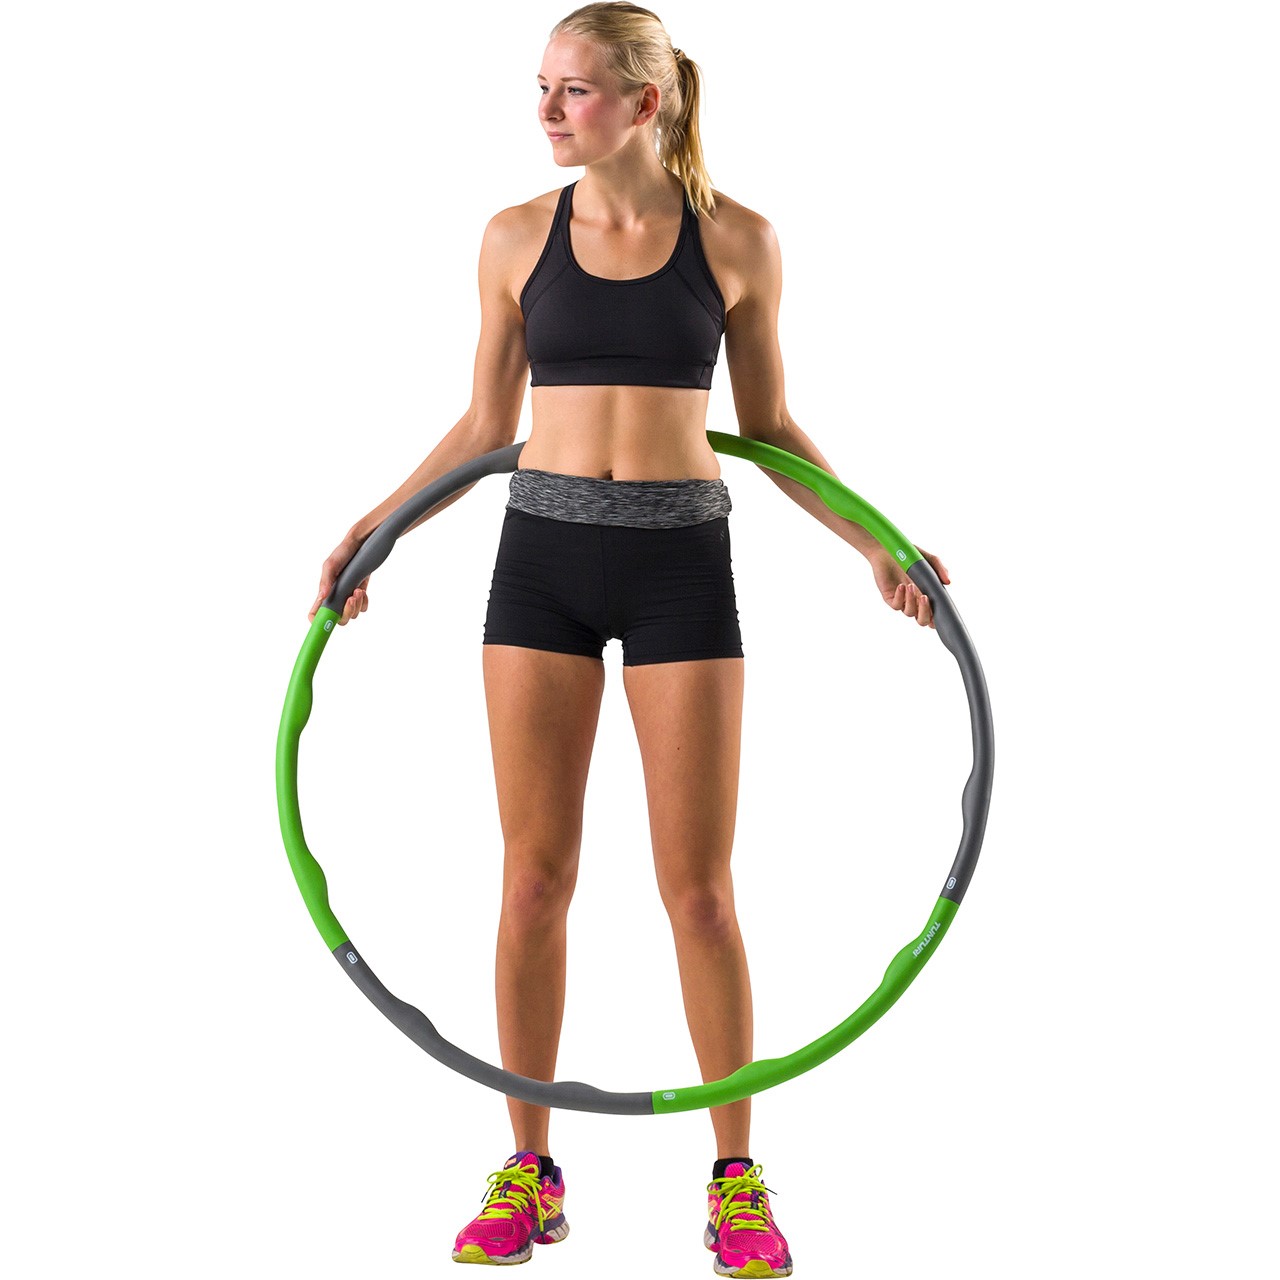 Tunturi Smart Fitness Hula Hoop Ring 1.2 kg